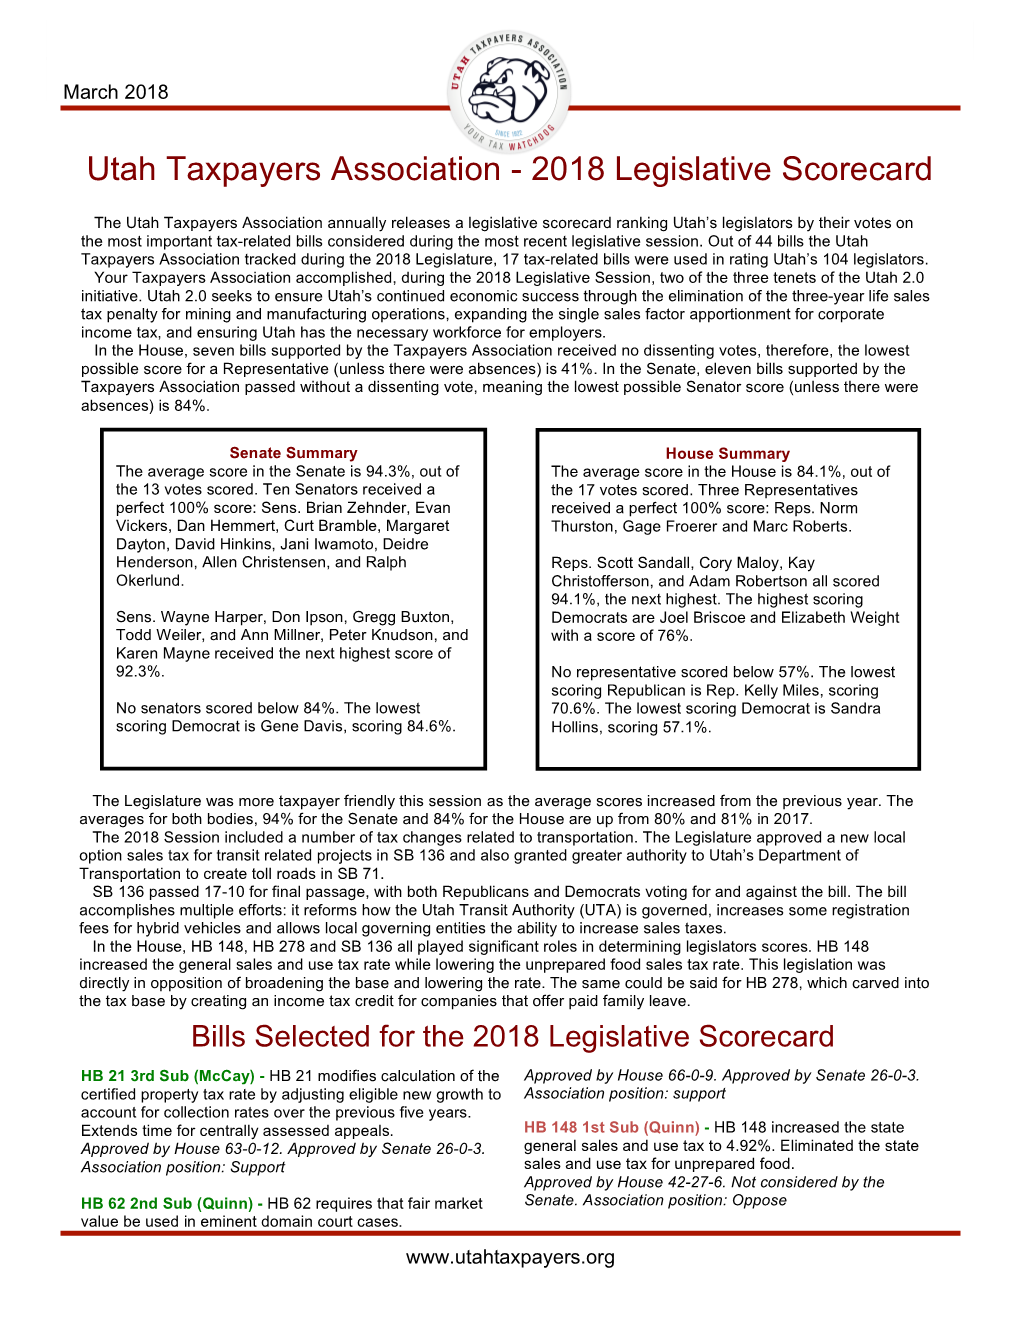 2018 Legislative Scorecard